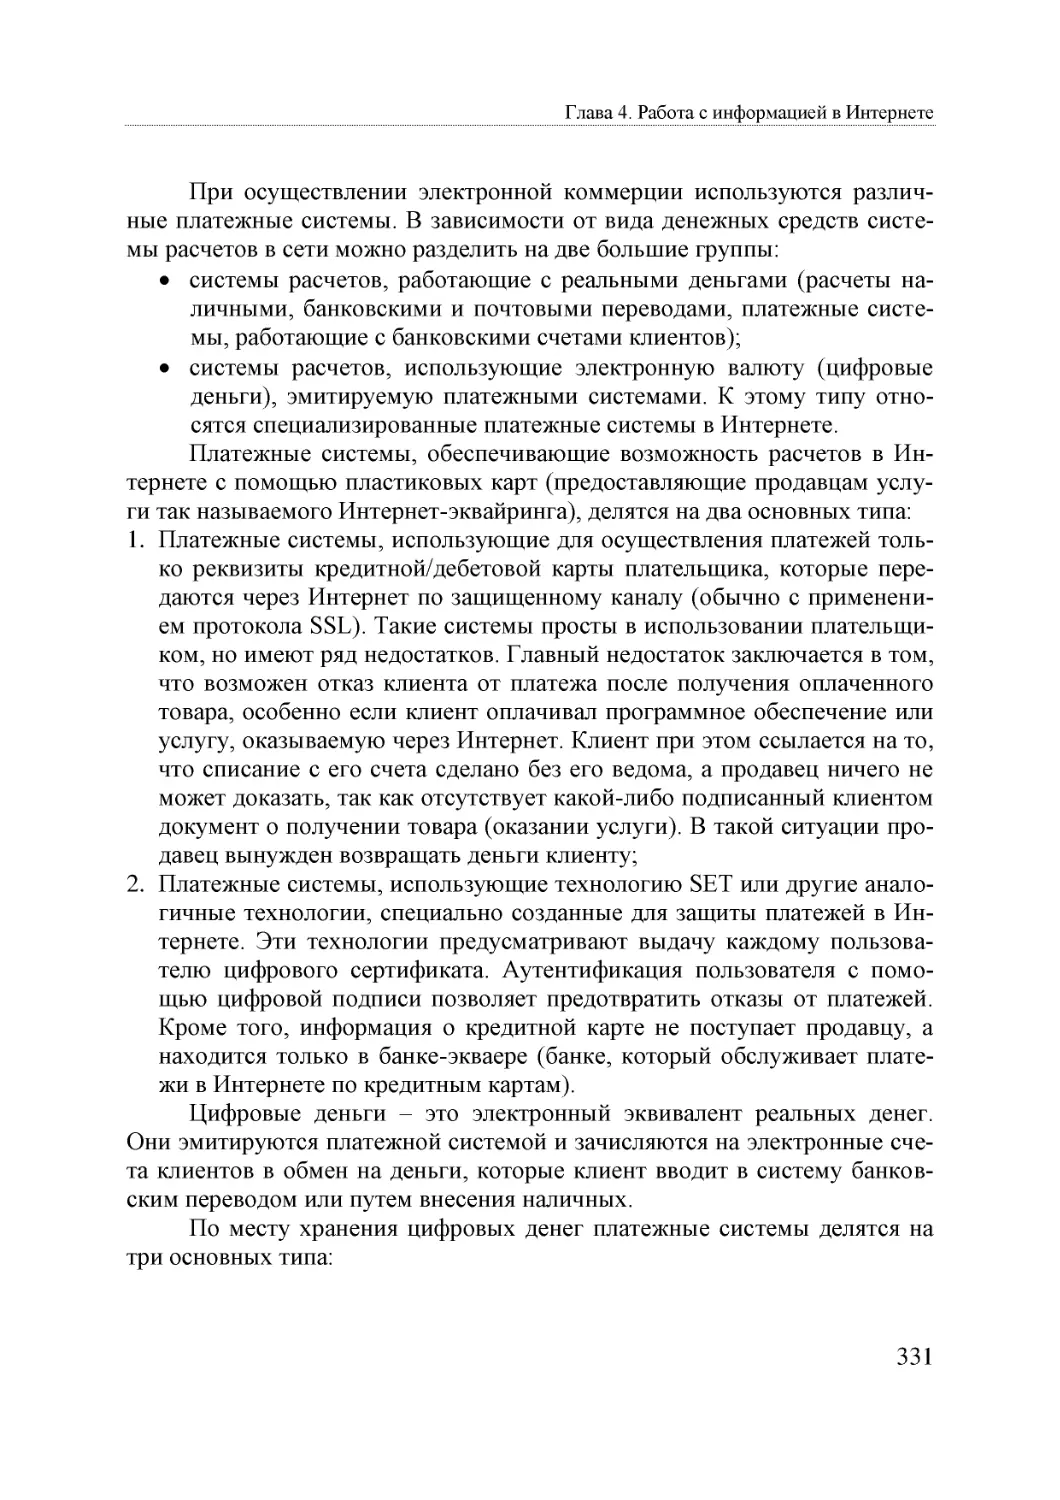 Informatika_Uchebnik_dlya_vuzov_2010 331